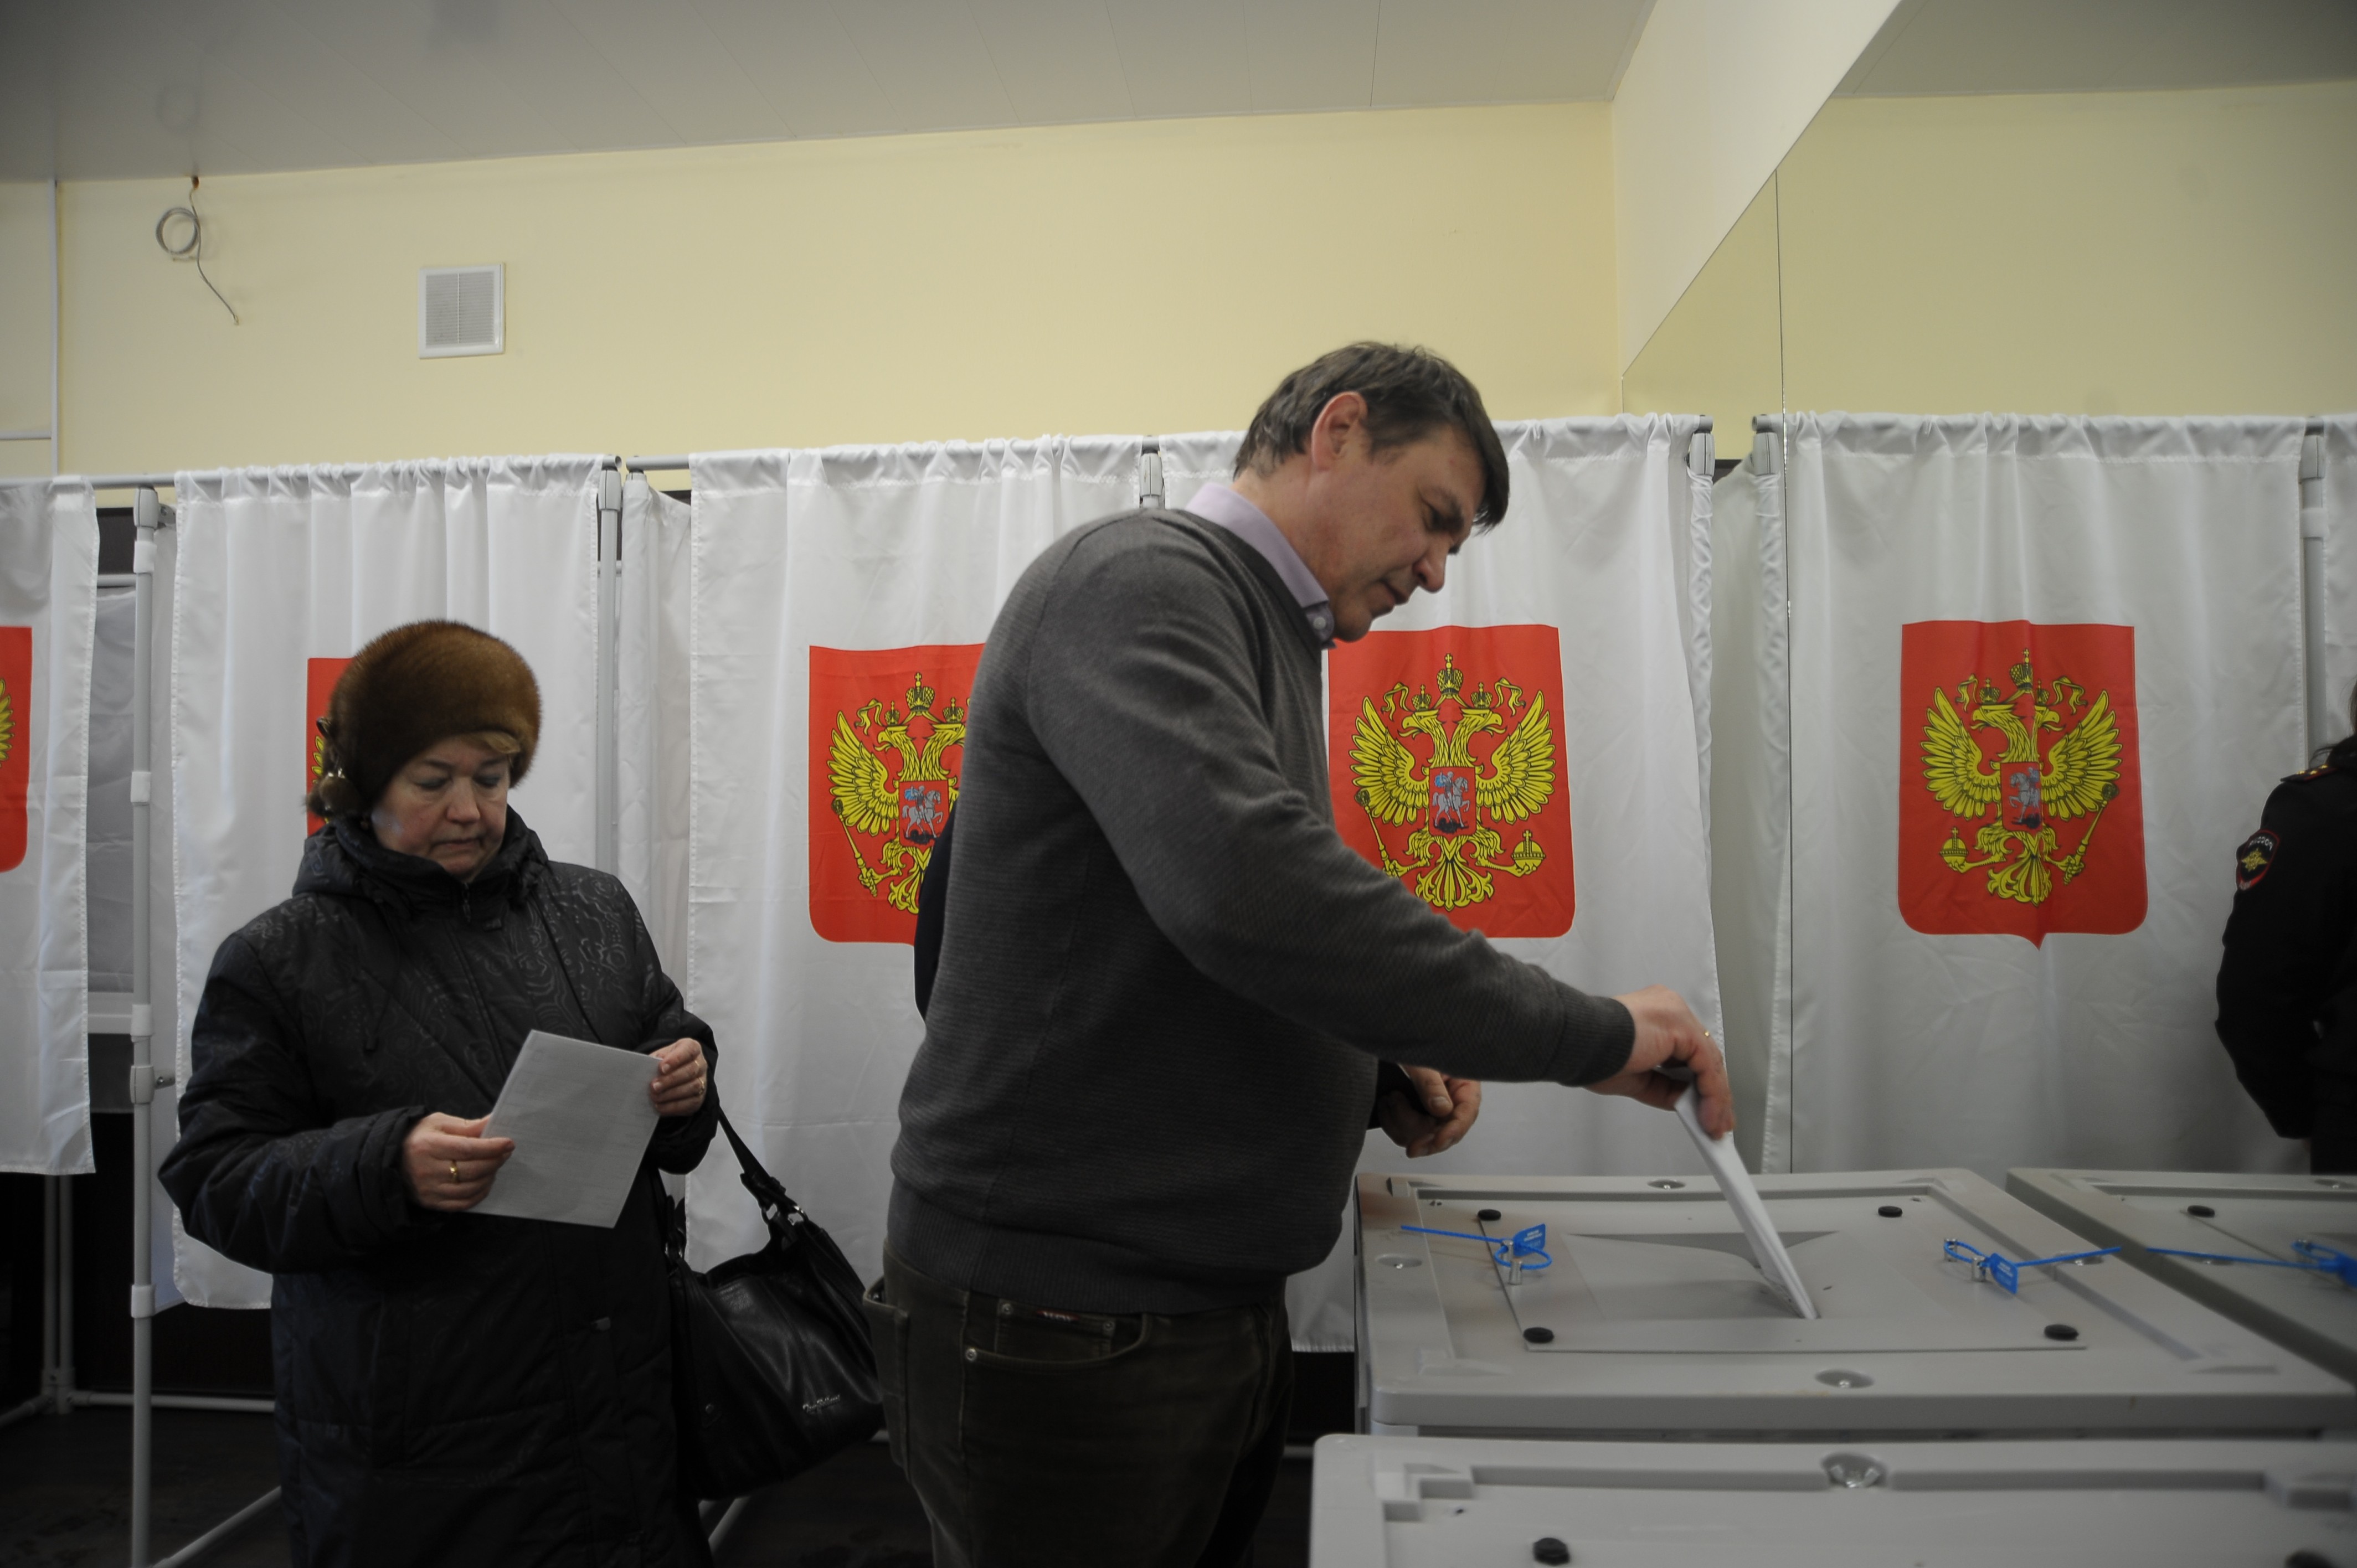 Полдень на избирательных участках. Избирательный участок в Раменском. Фото с избирательного участка 2633.